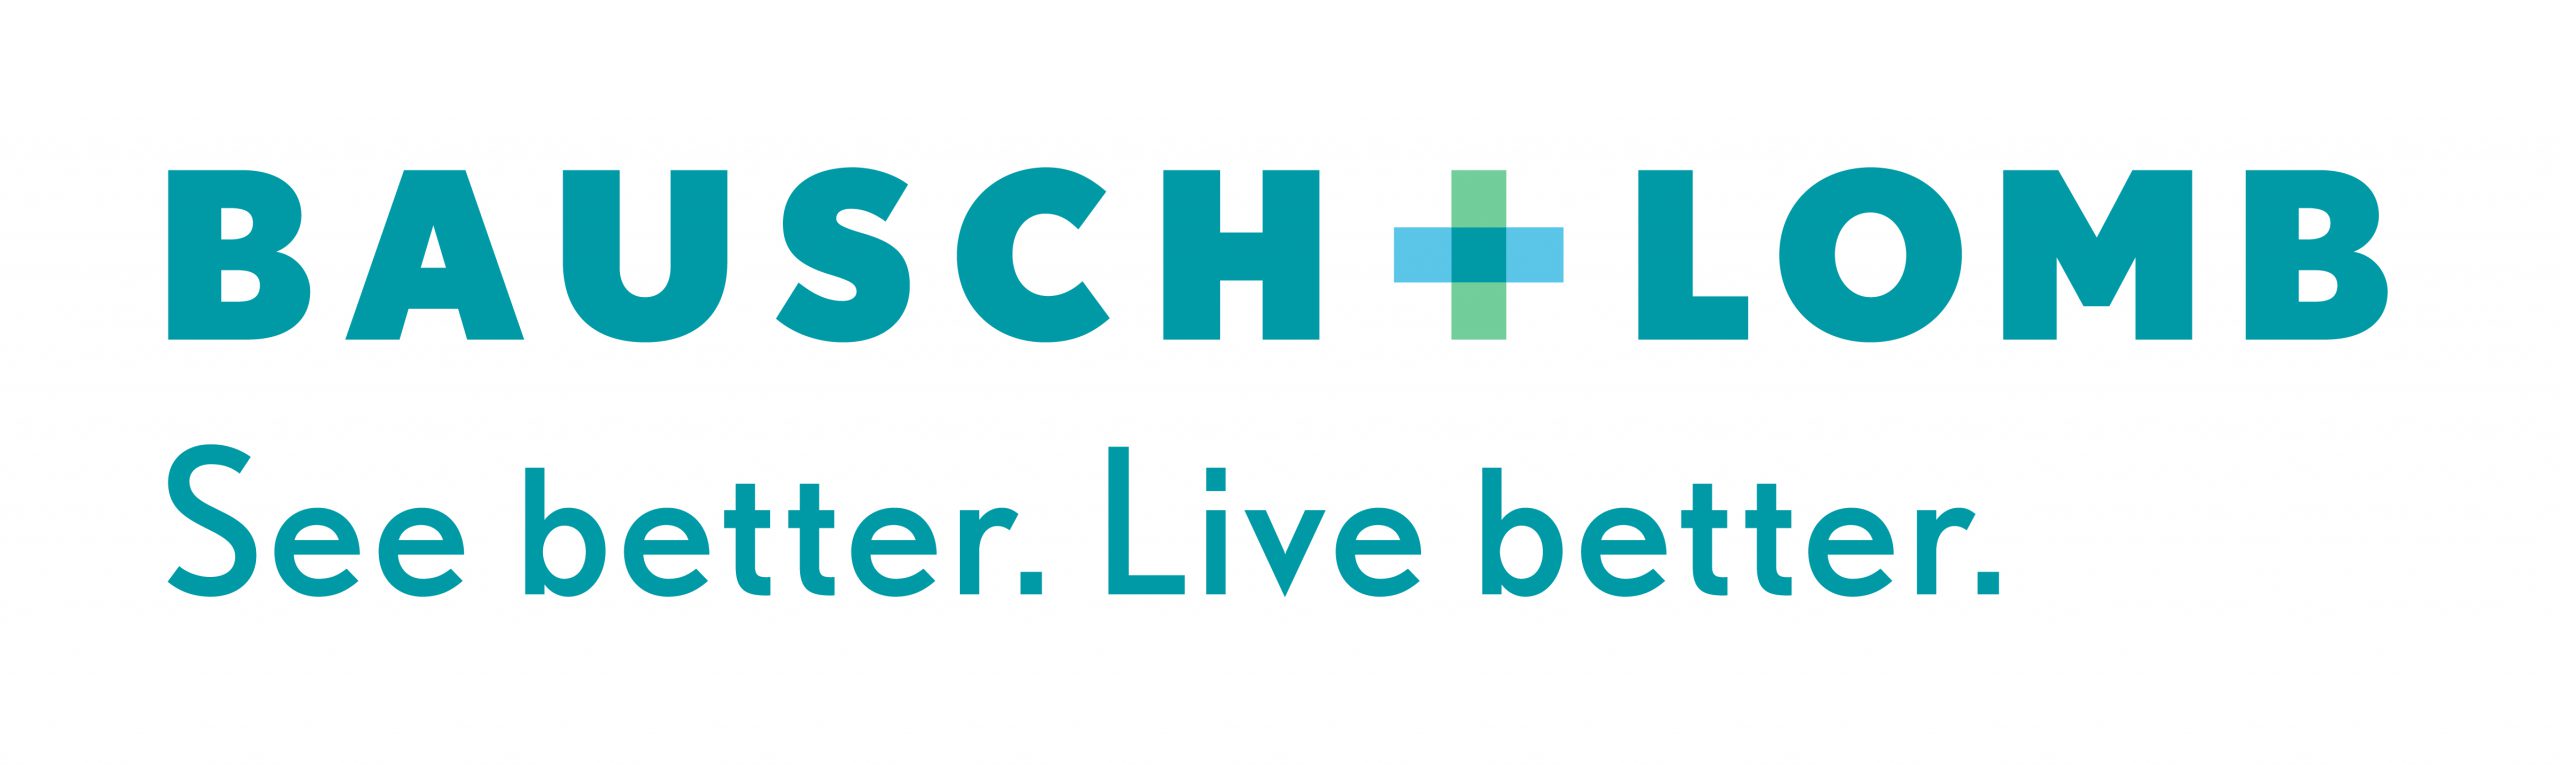 Bausch-Lomb-logo-w-tagline